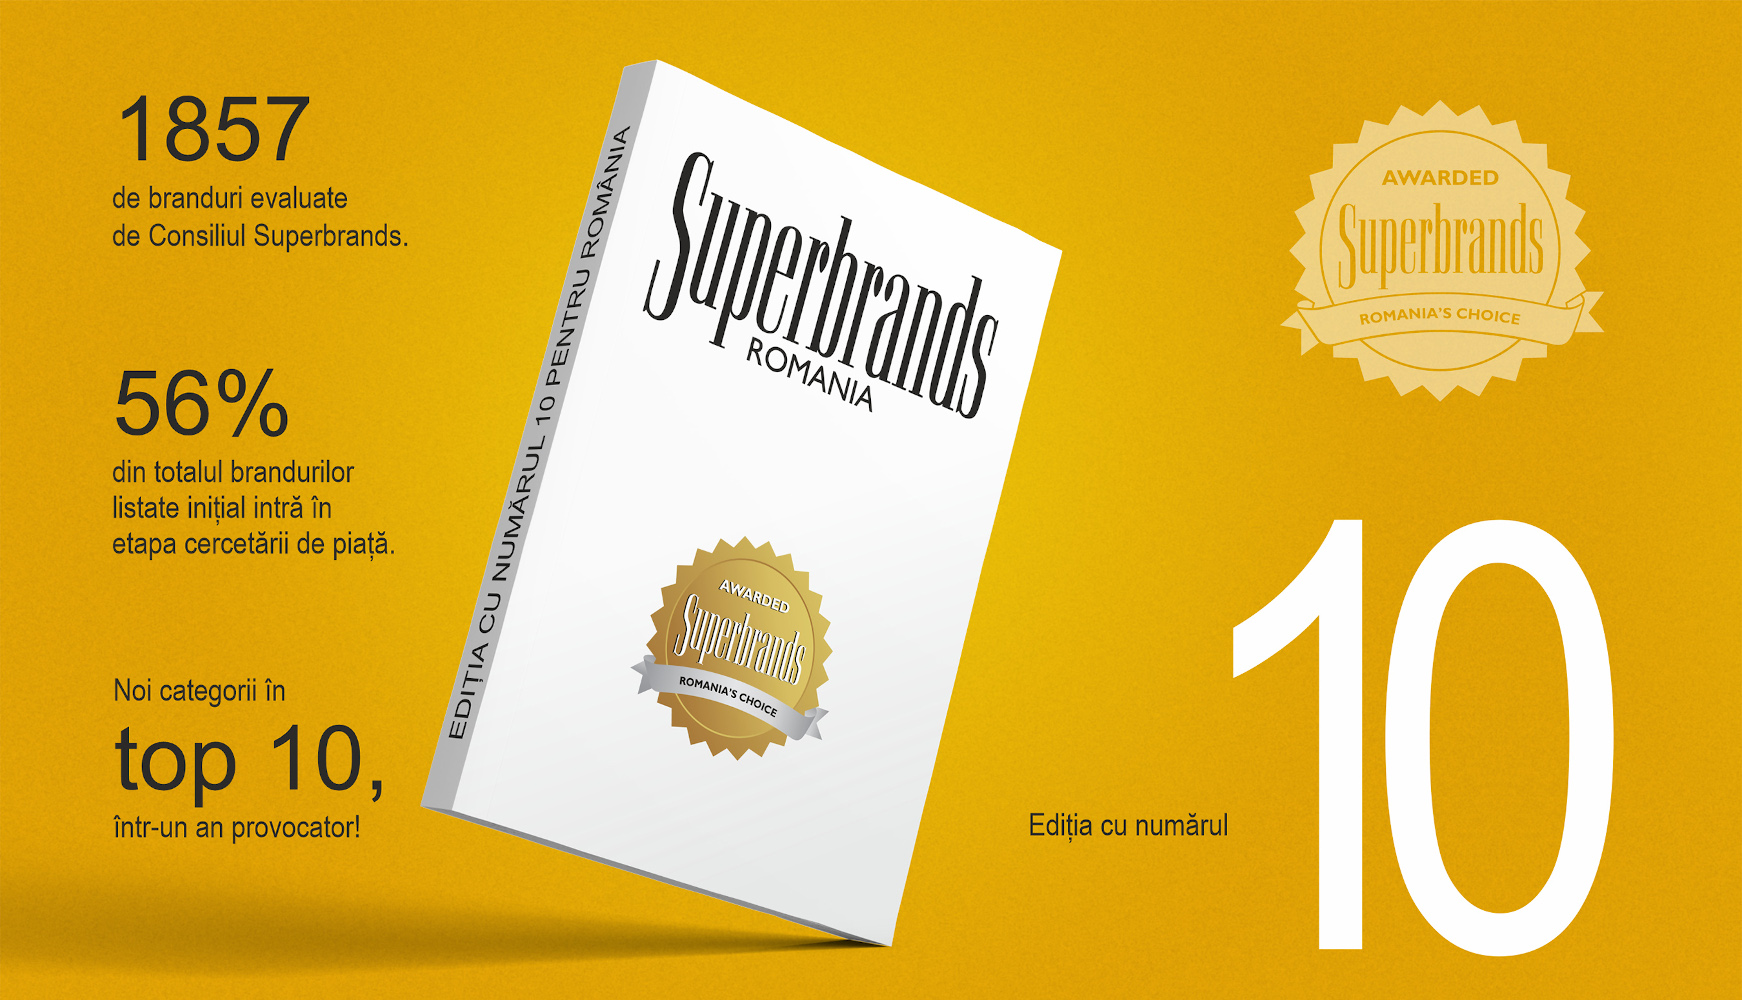 Superbrands România la ceas aniversar: ediția cu numărul 10 pentru România a demarat